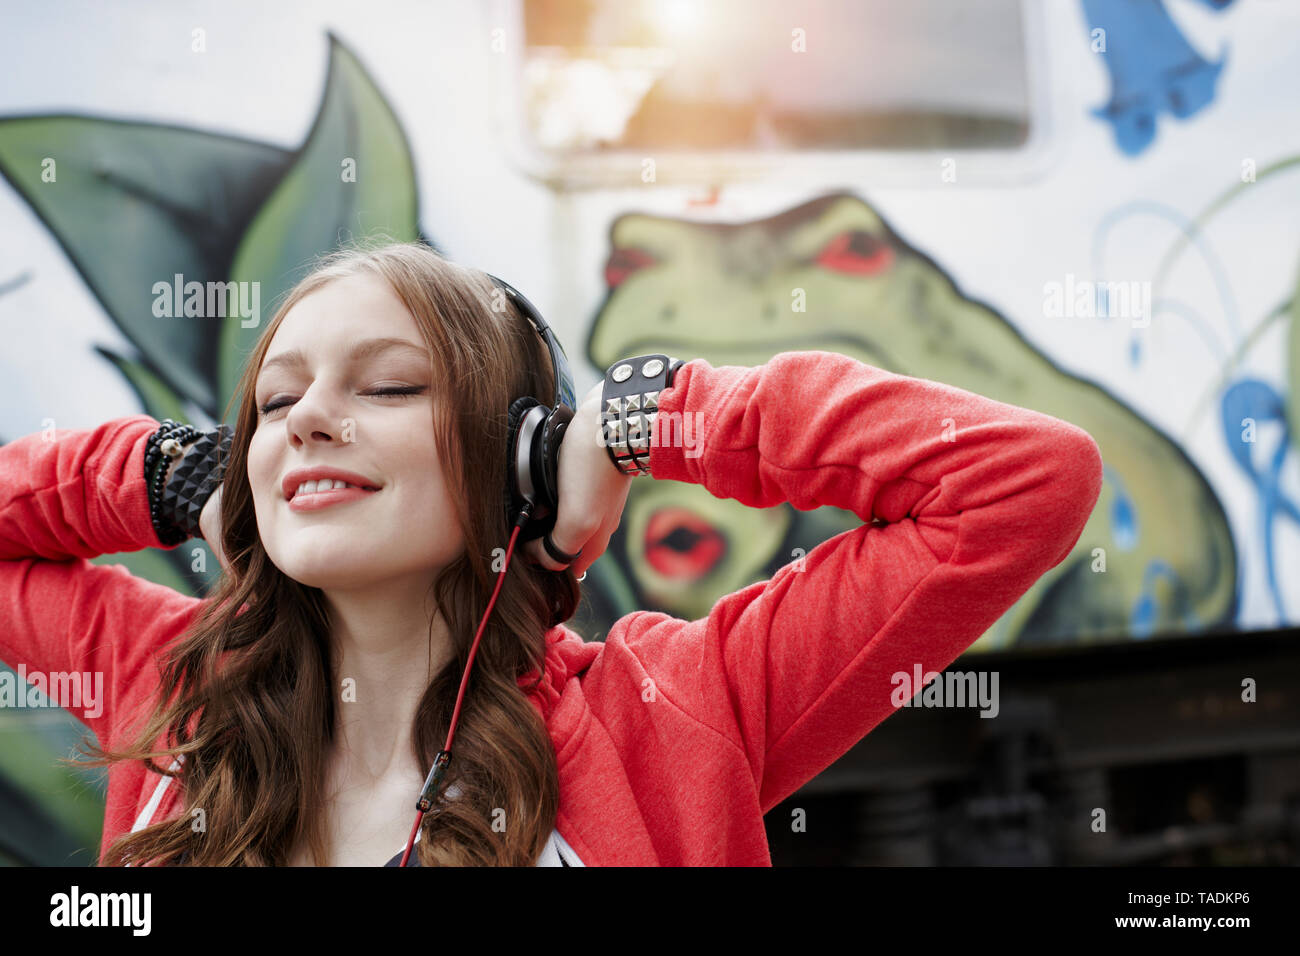 Ritratto di ragazza adolescente che indossano le cuffie a un dipinto di carrozza del treno Foto Stock